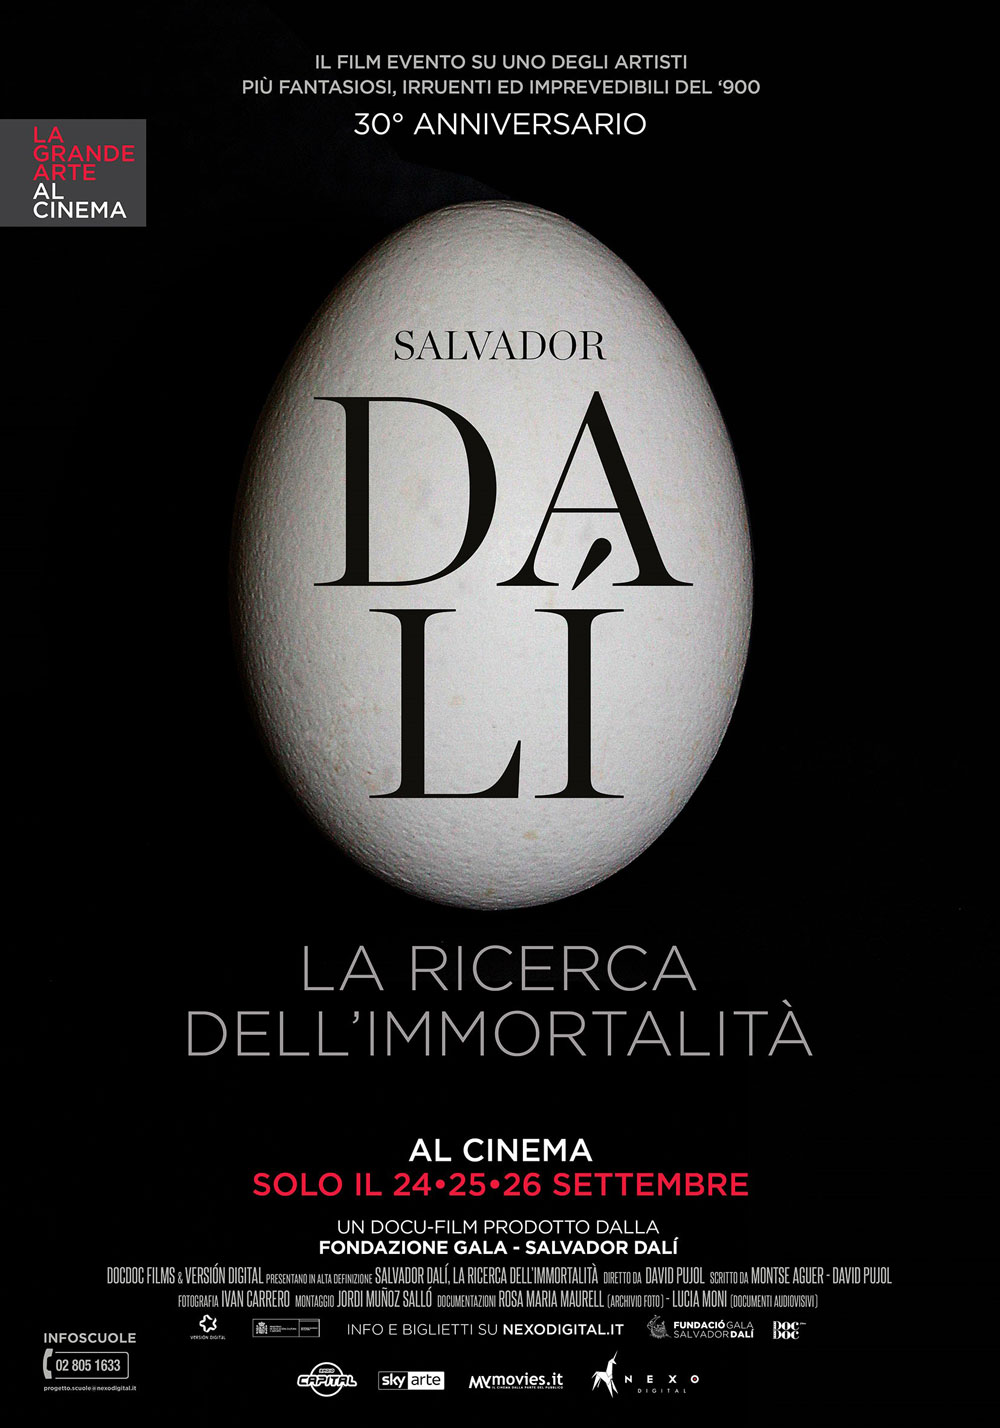 Il nuovo cartellone 2018 de La Grande Arte al Cinema si apre con Dalí